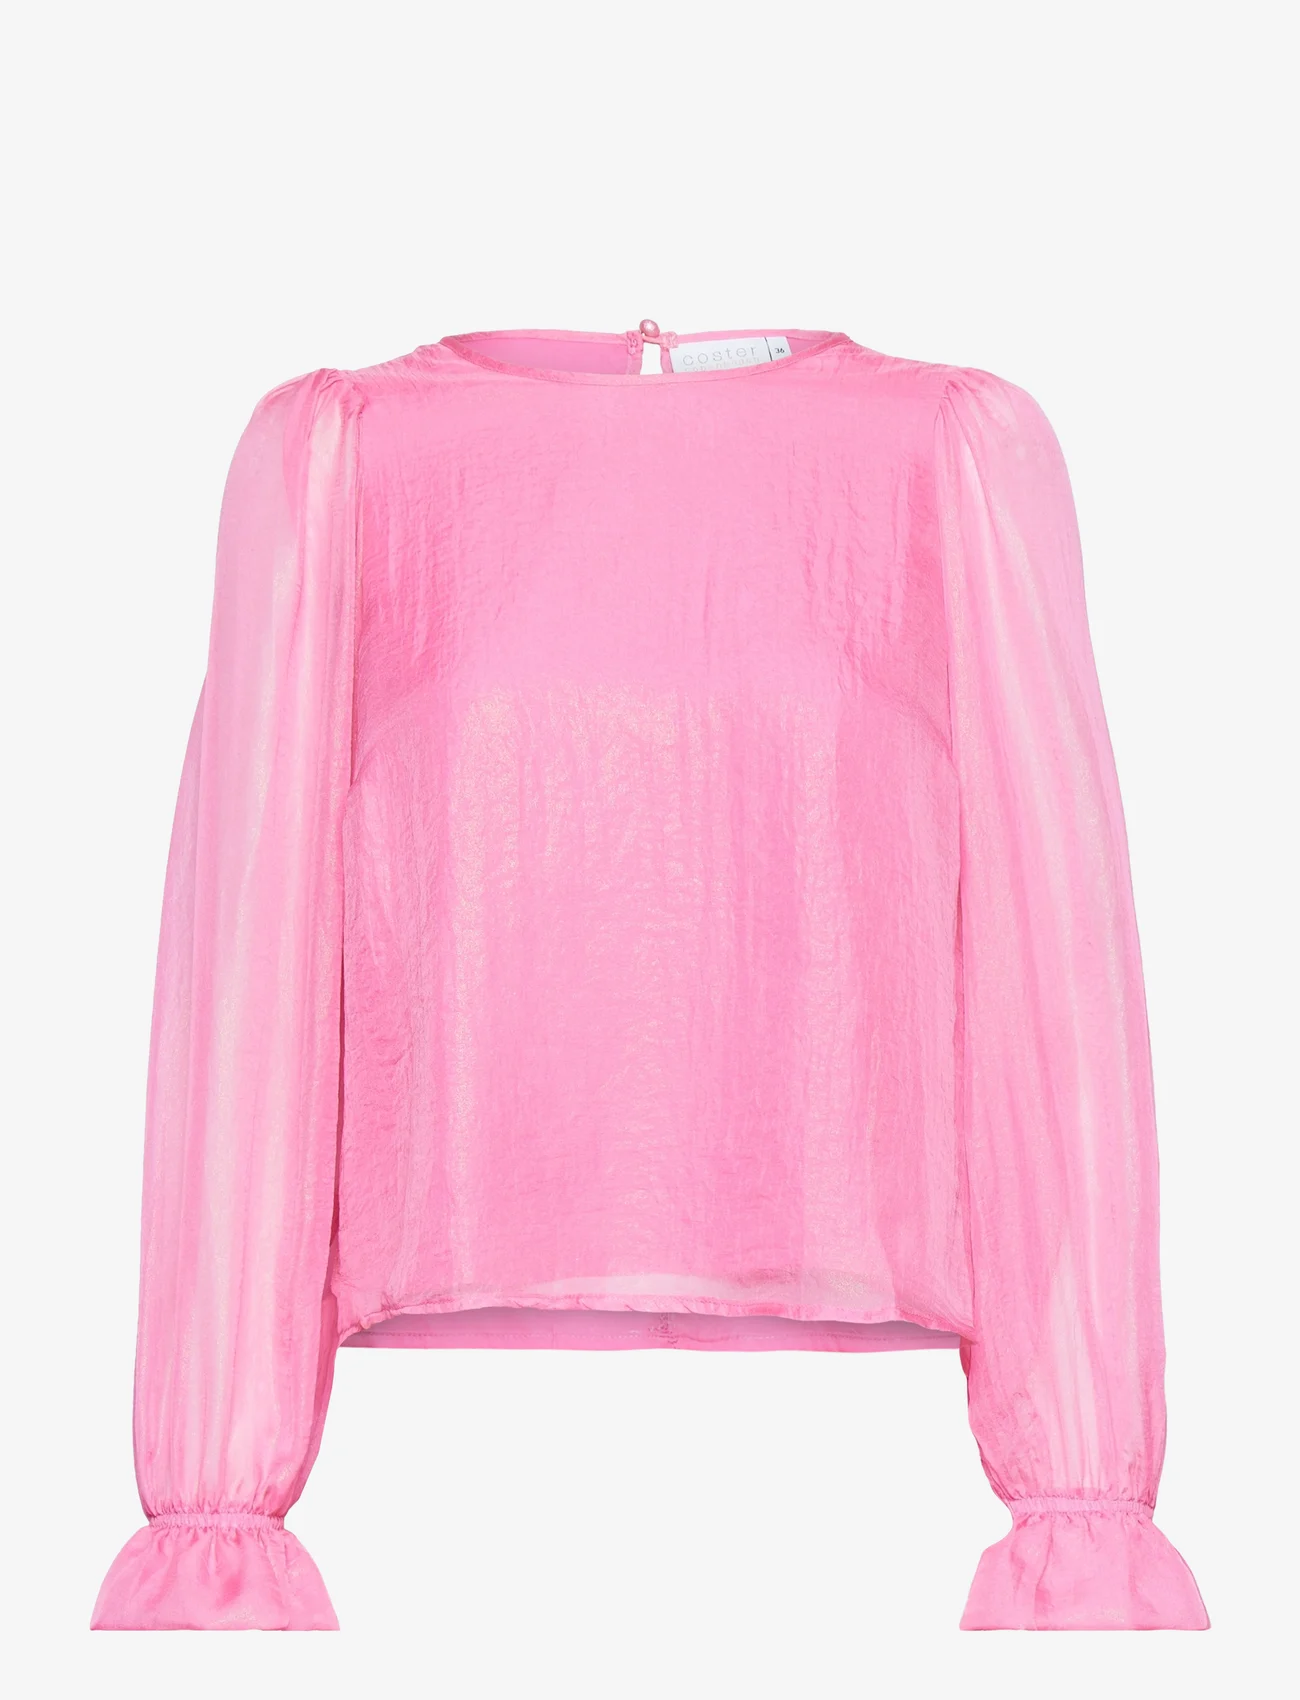 Coster Copenhagen - Top in metallic shimmer - langærmede bluser - metallic pink - 0